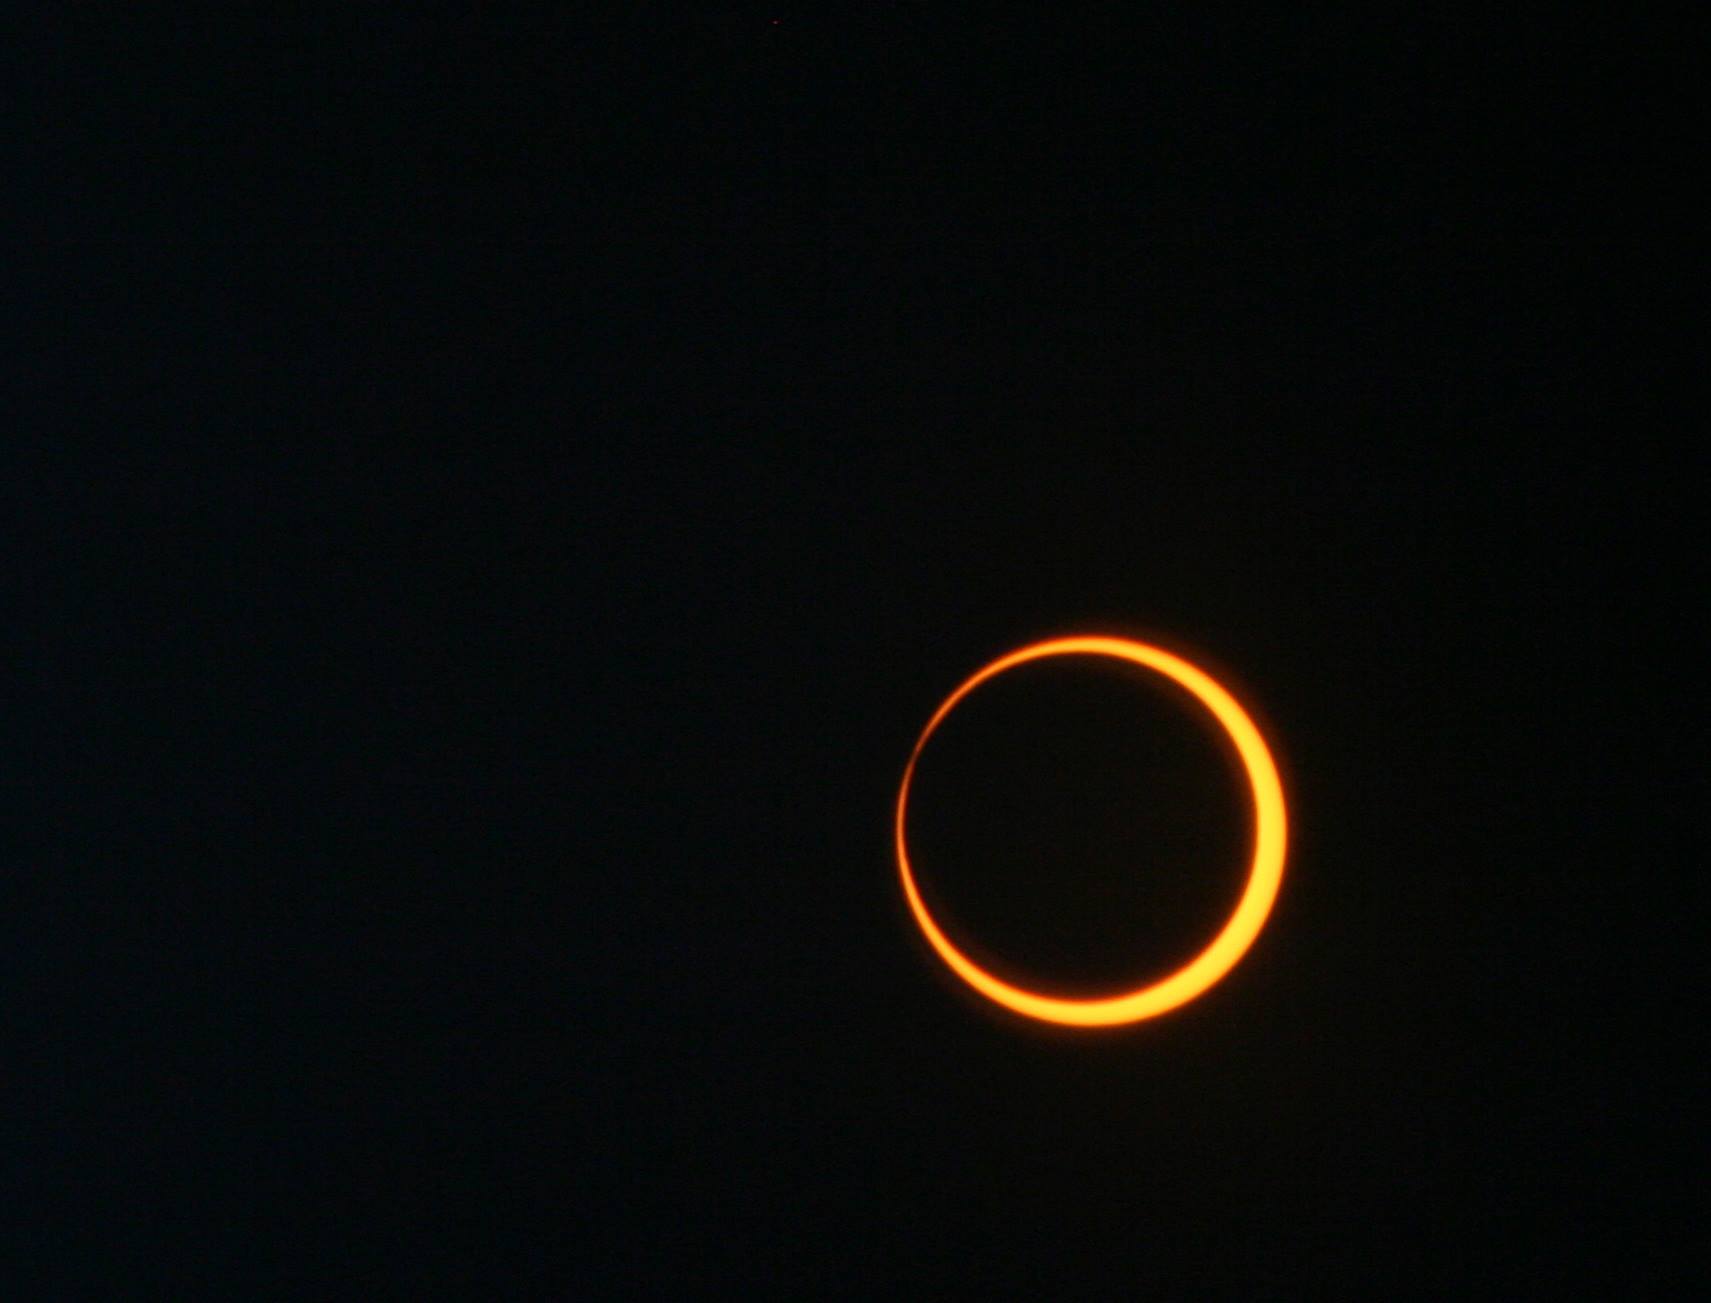 Photograph of an annular solar eclipse